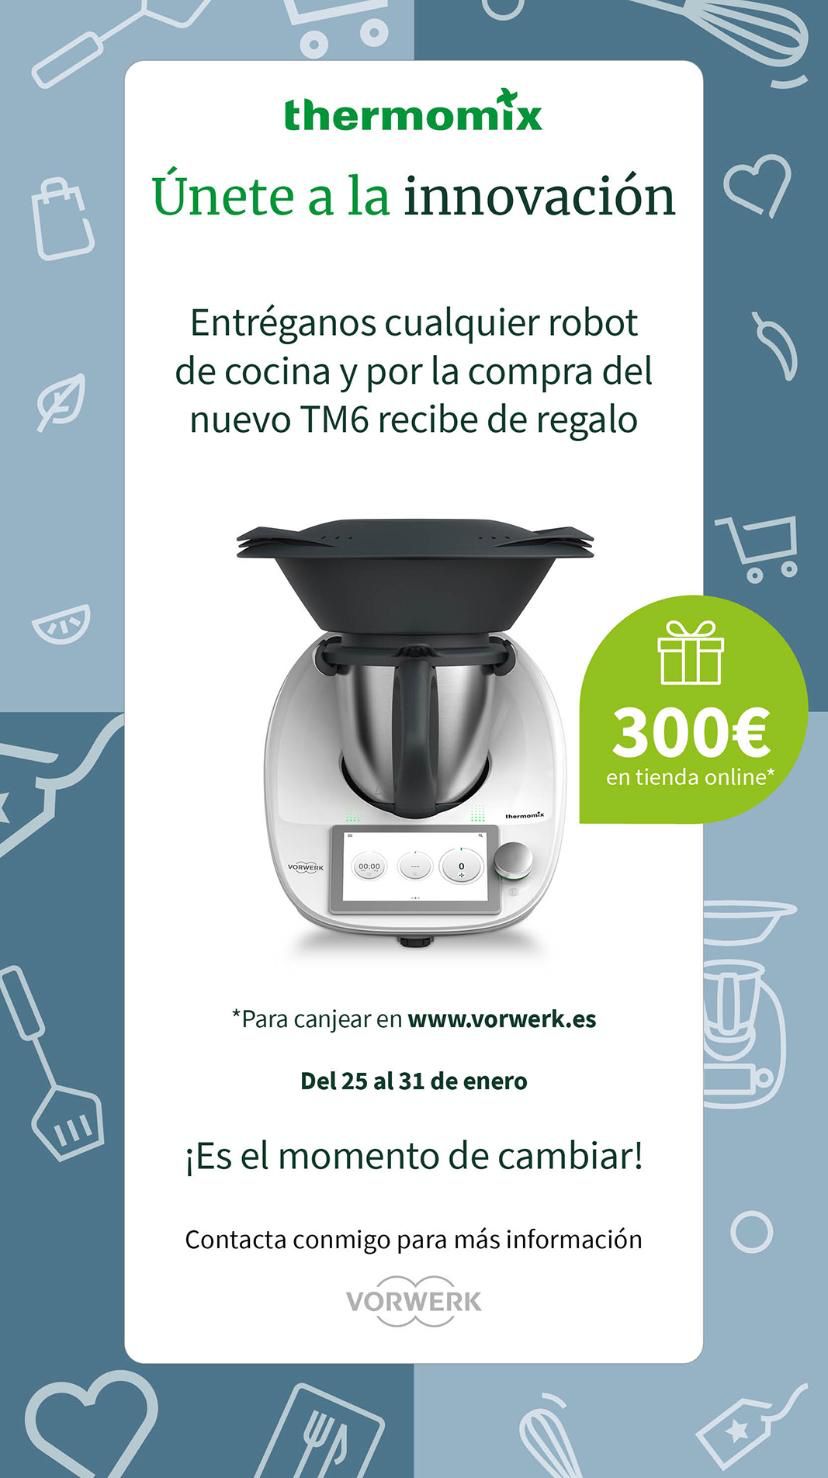 Thermomix® PLASENCIA. 300 € Por entregar tu robot de cocina